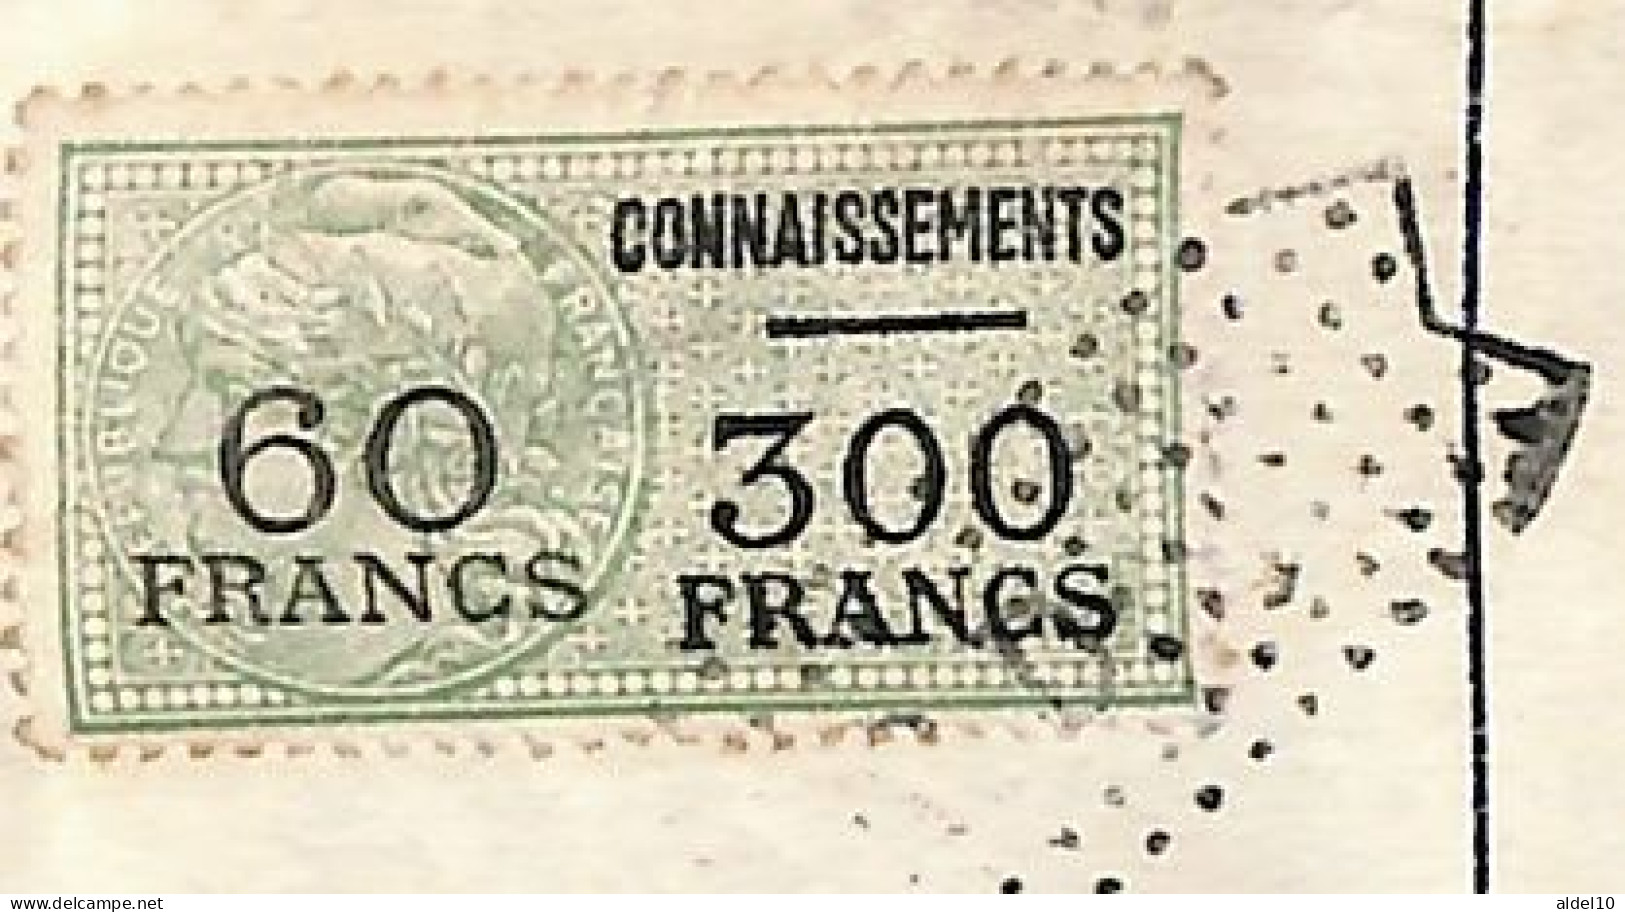 Connaissement Pour Bordeaux 1954 Avec Timbres Valeur Surch 60 Franc Sur 300 Vert - Storia Postale